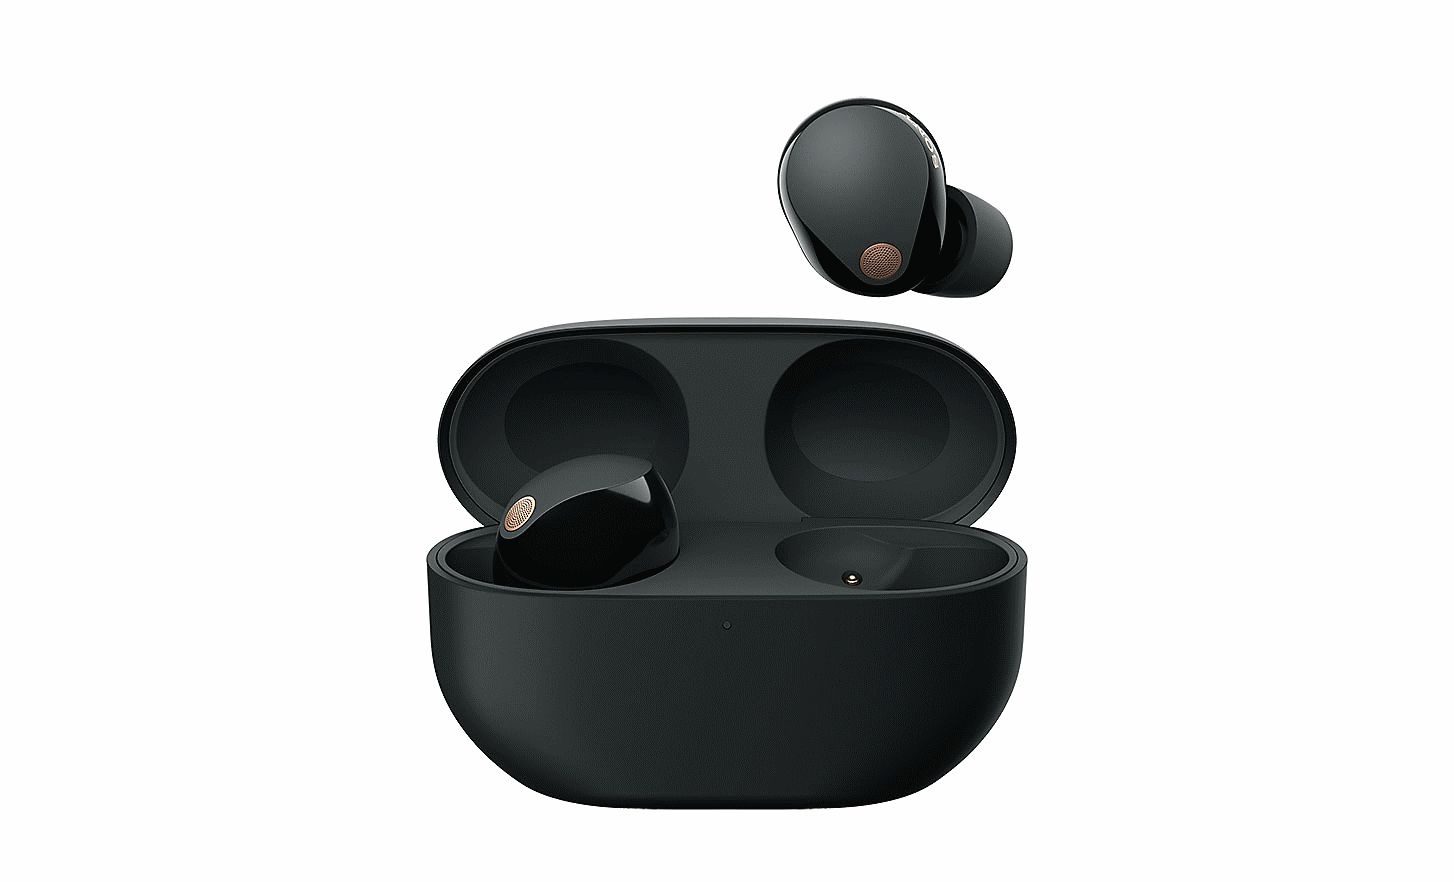 Зображення навушників WF-1000XM5 усередині чохла з відкритою кришкою та одним навушником, що плаває над чохлом